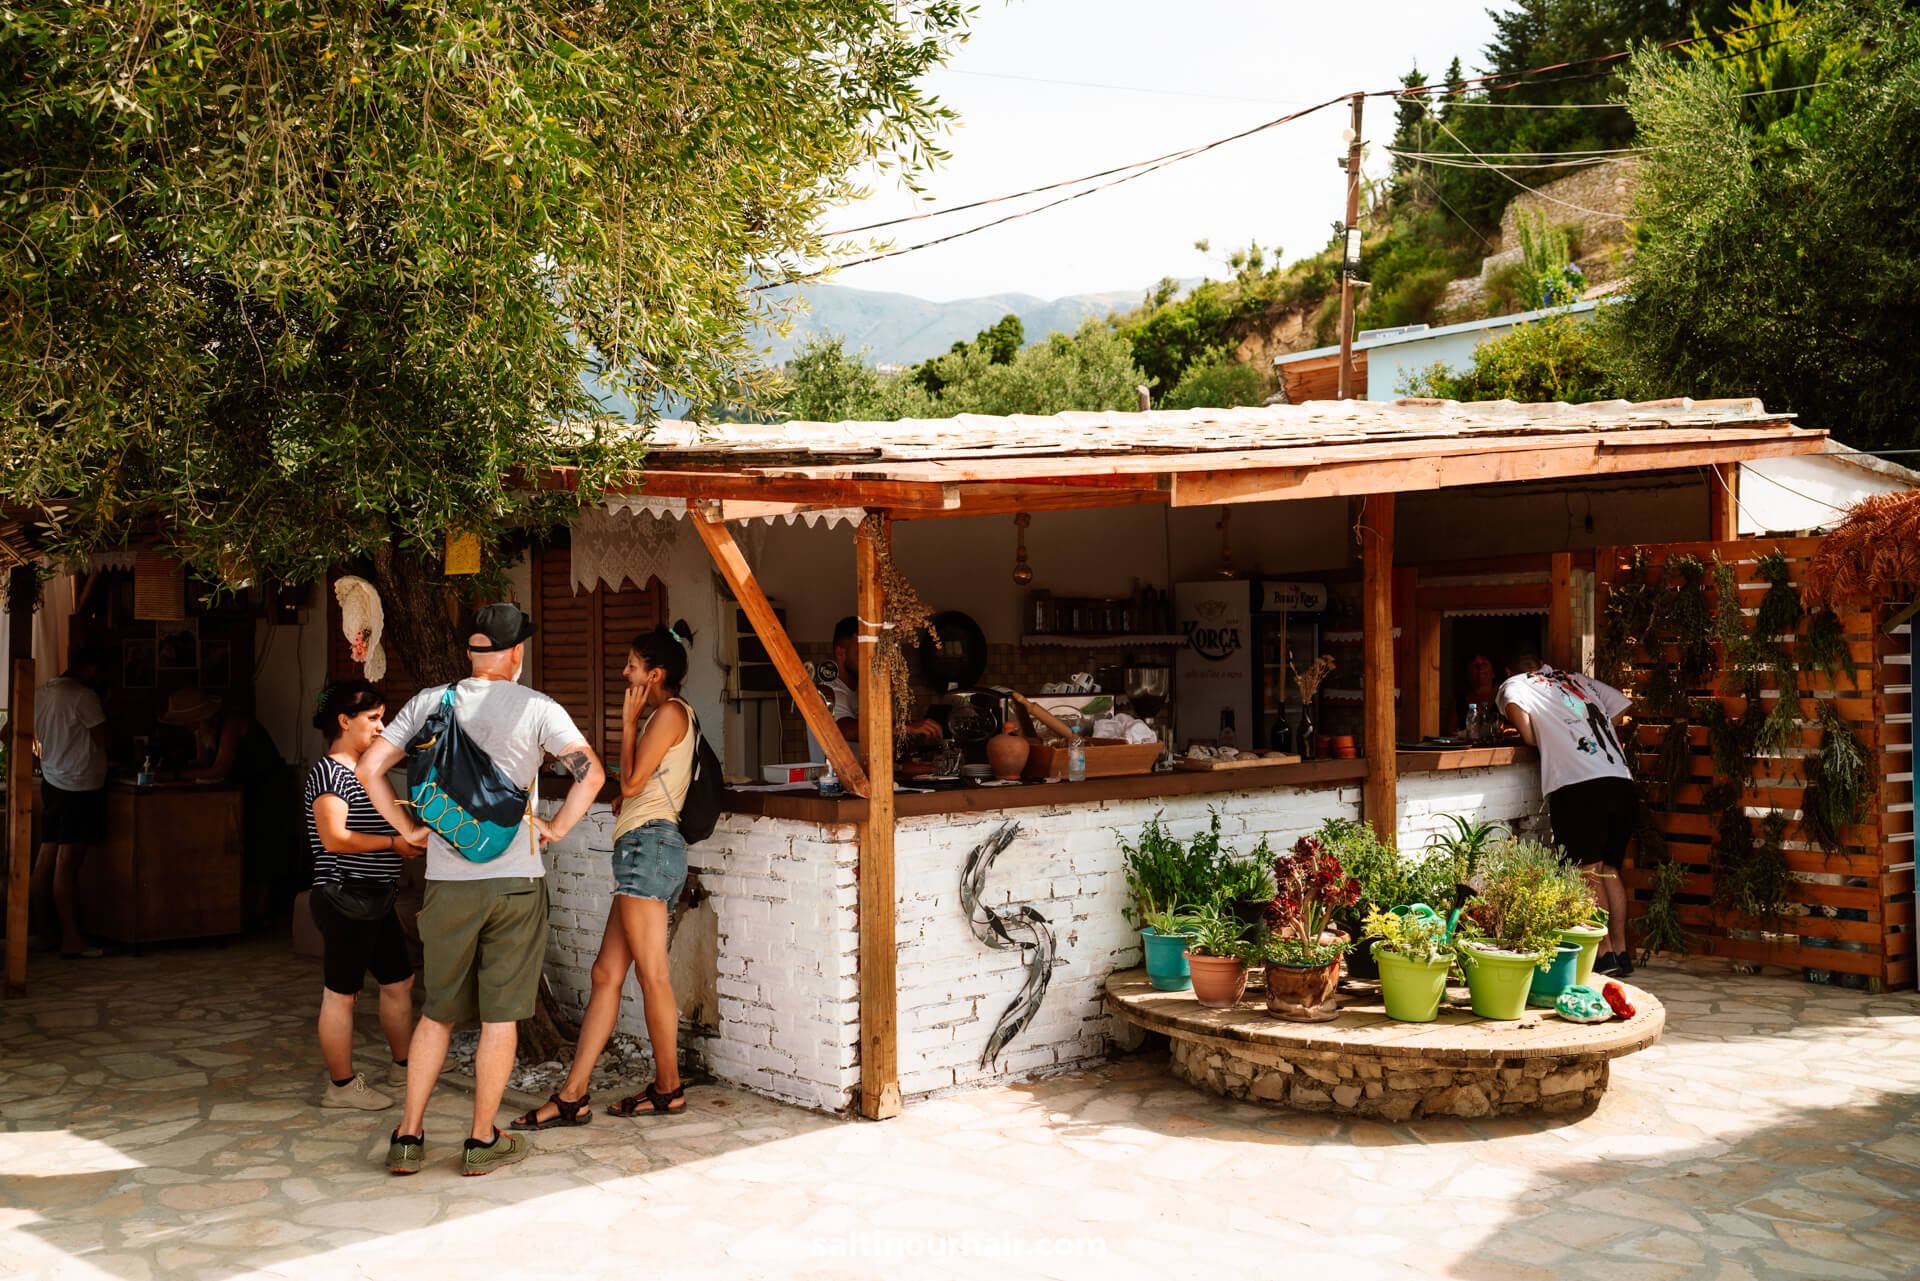 himare albaniÃ« restaurant